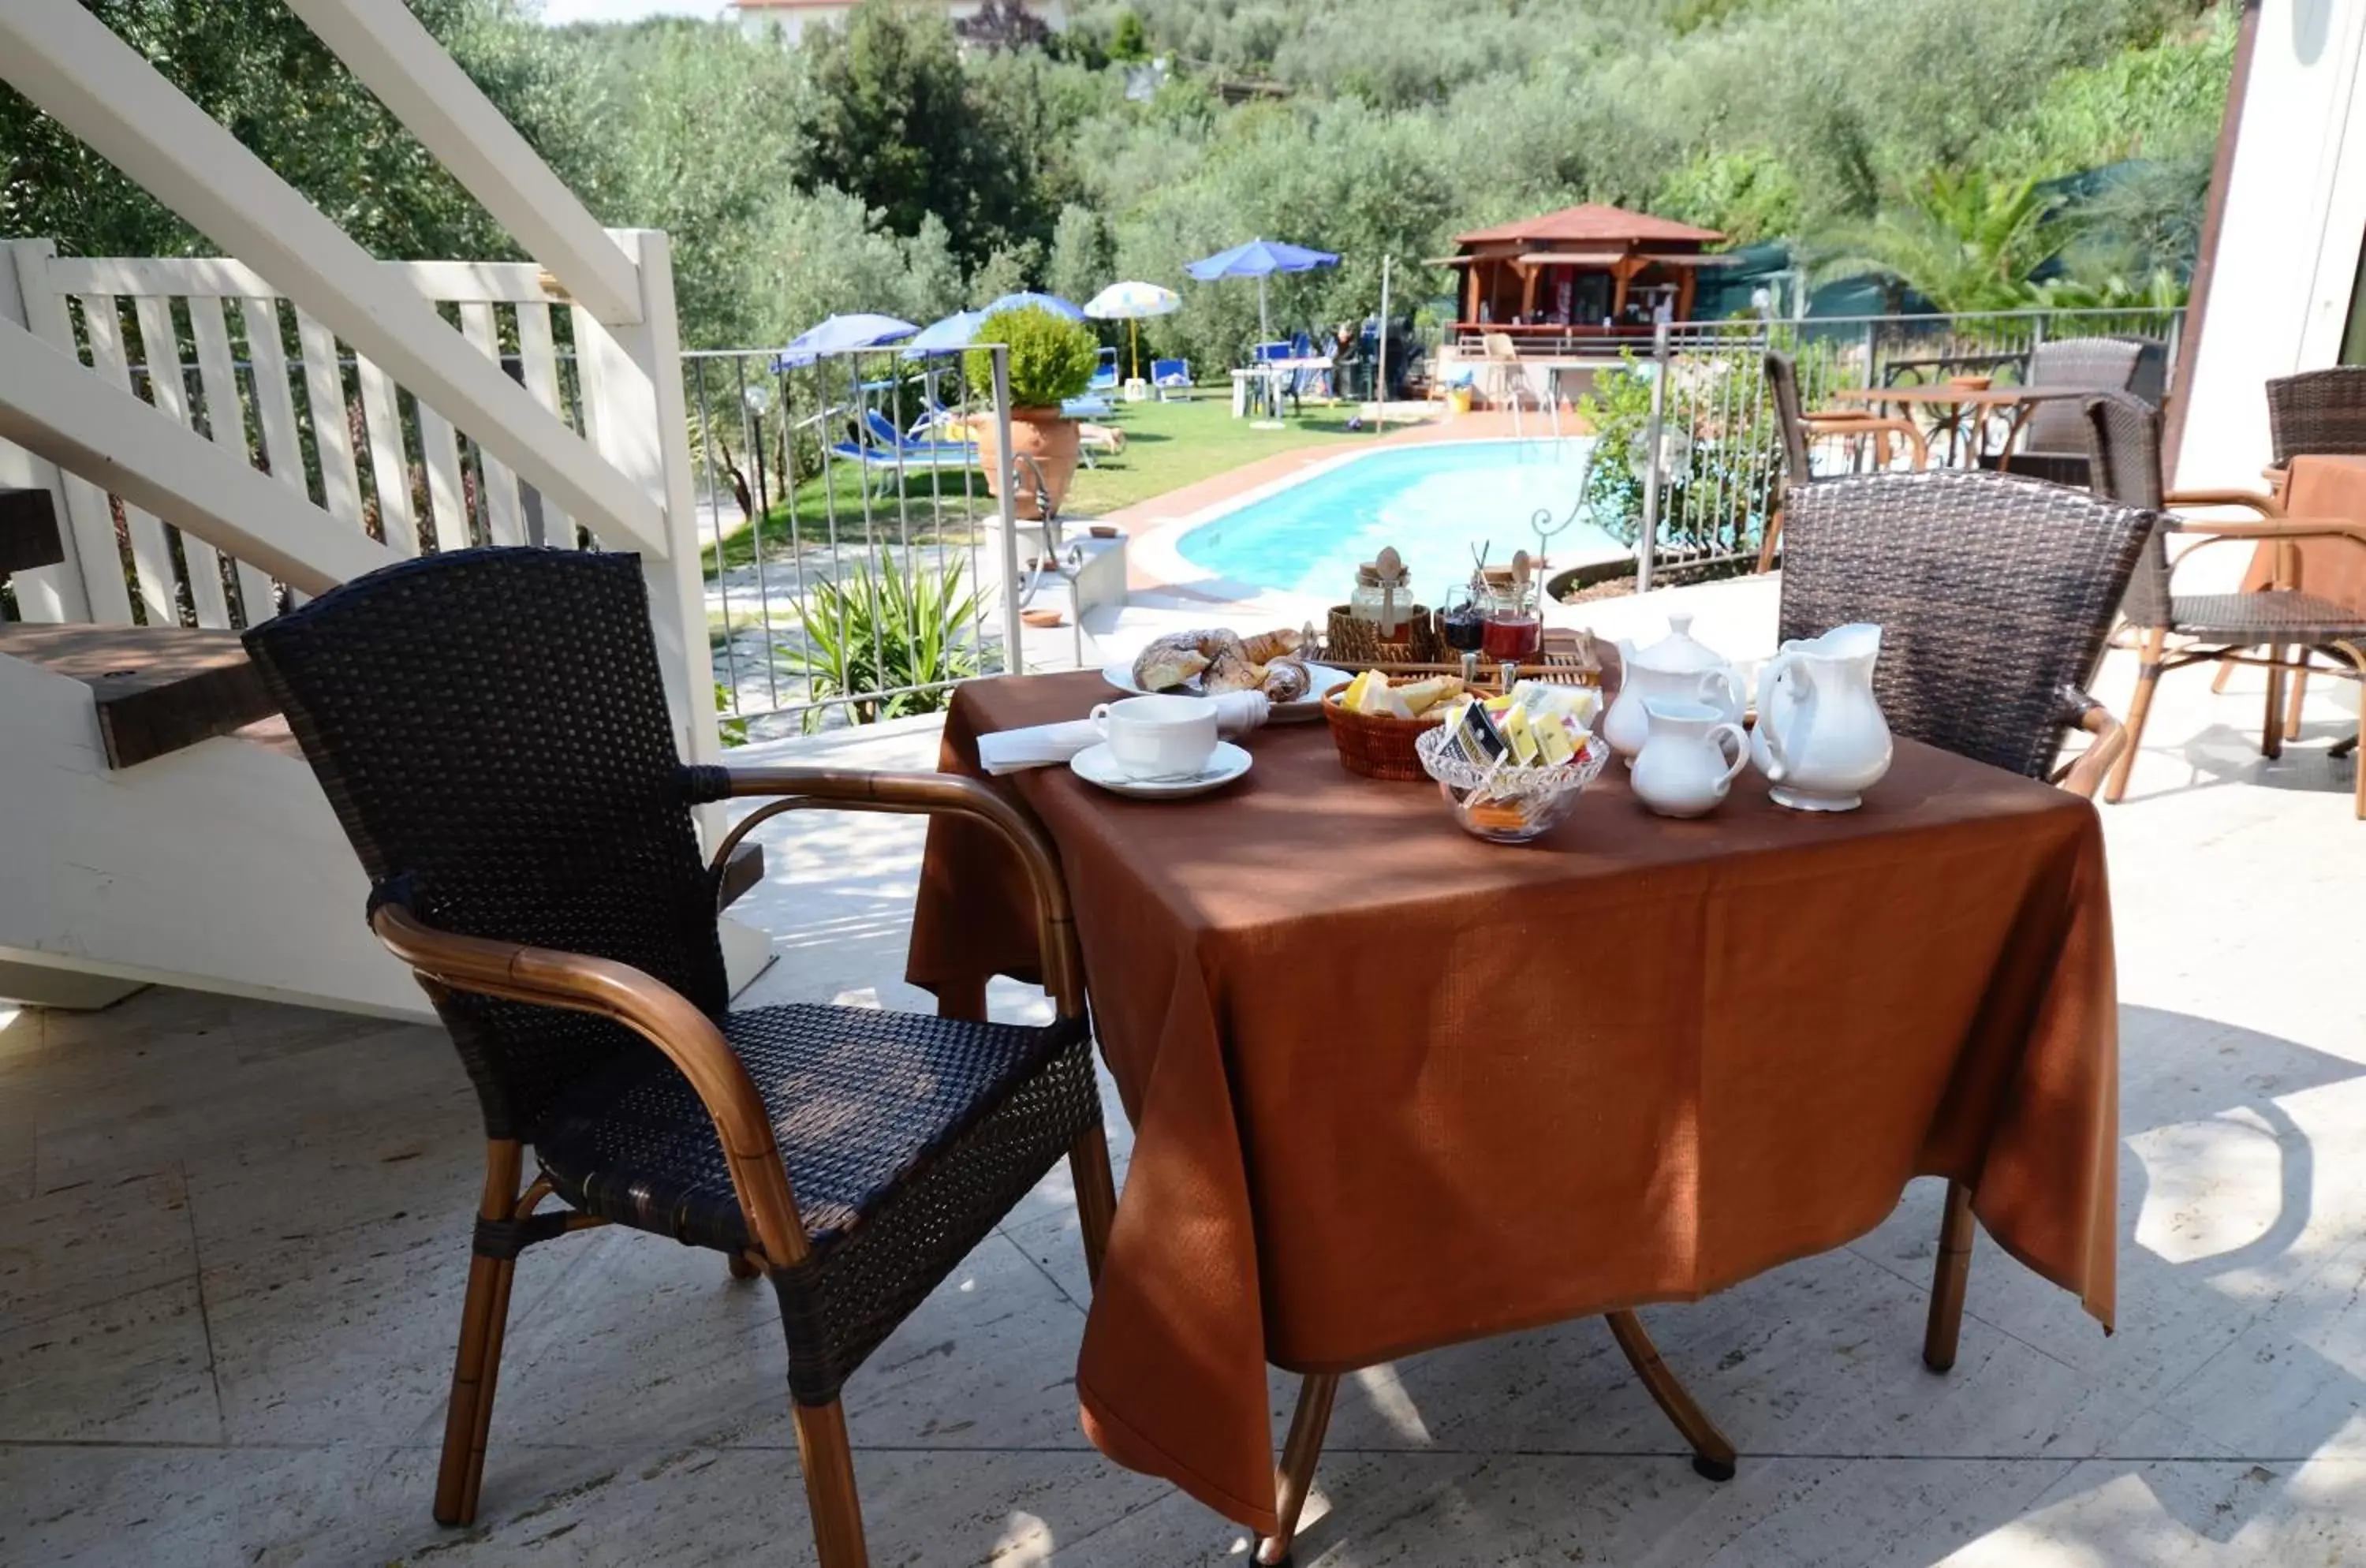 Restaurant/places to eat in Poggio Degli Olivi